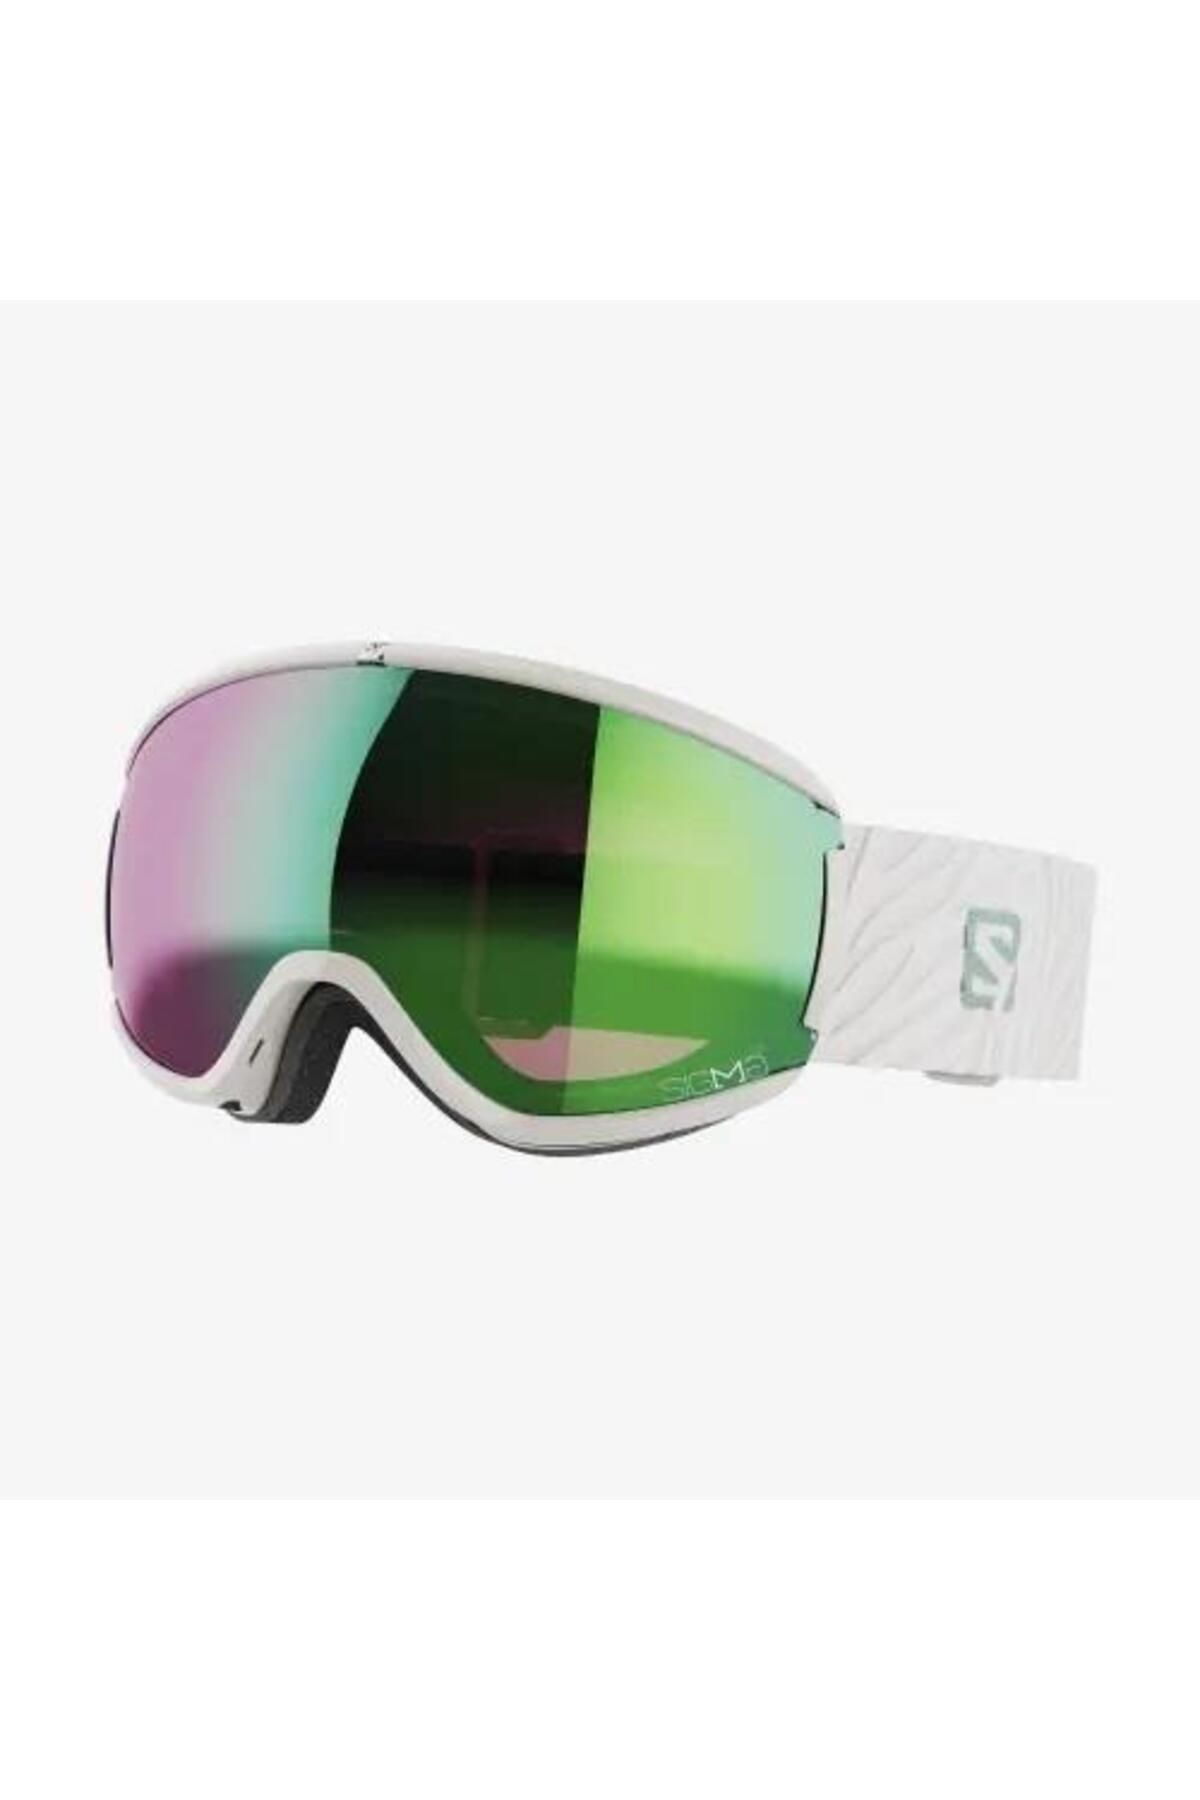 Salomon Ivy Sigma Goggle Kadın Kayak/snowboard Gözlük-l41480300rnd